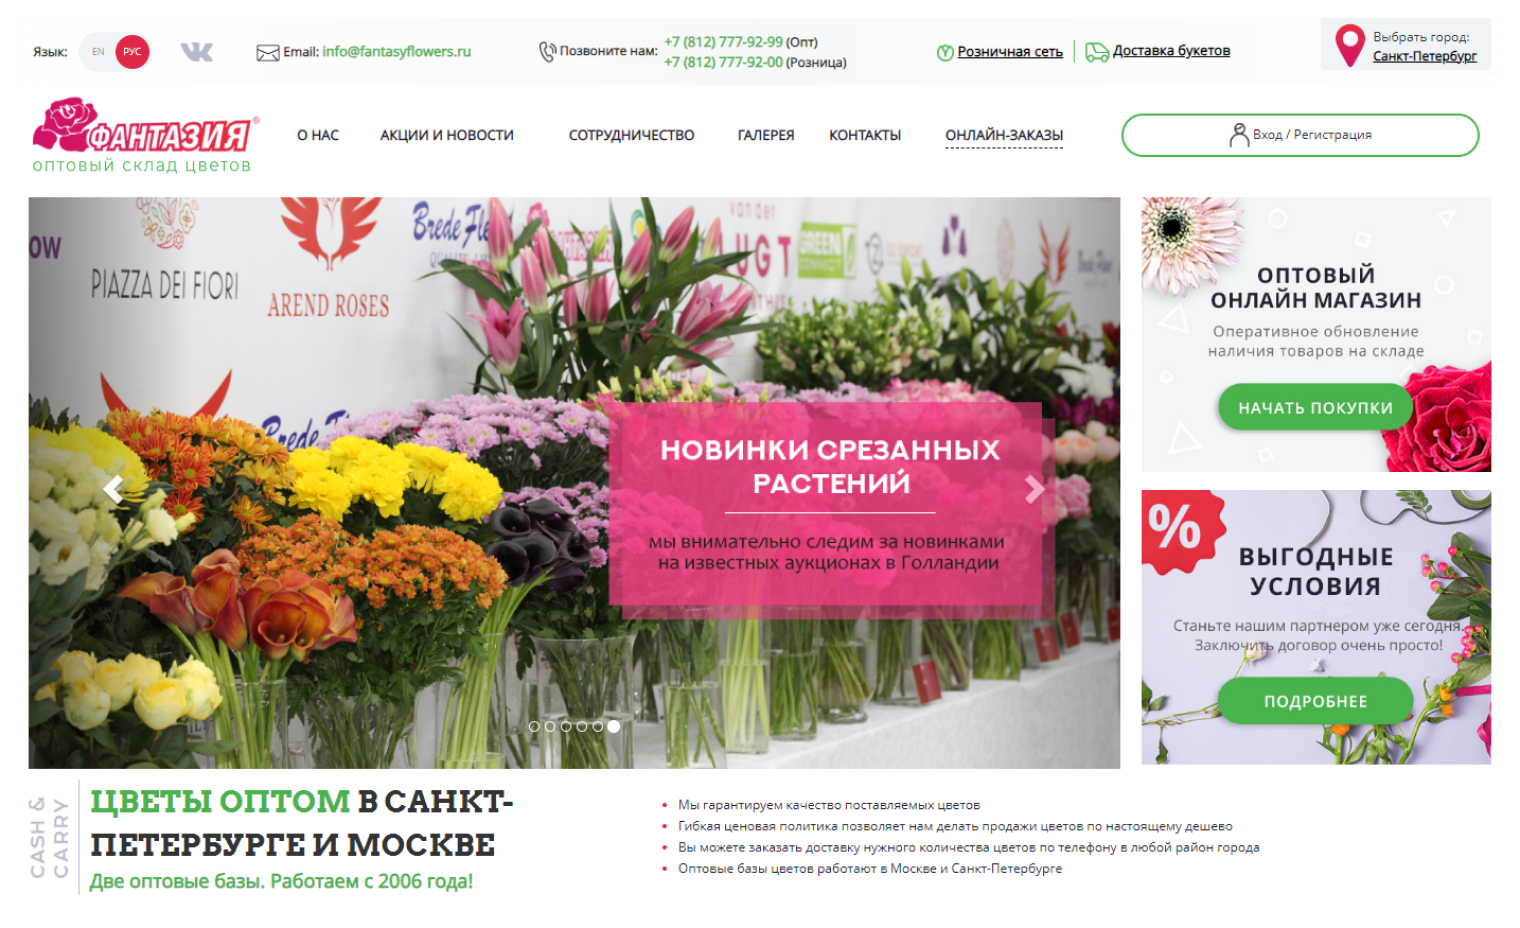 Частная база «Фантазия» доставляет цветы по всей России. Источник: fantasyflowers.ru